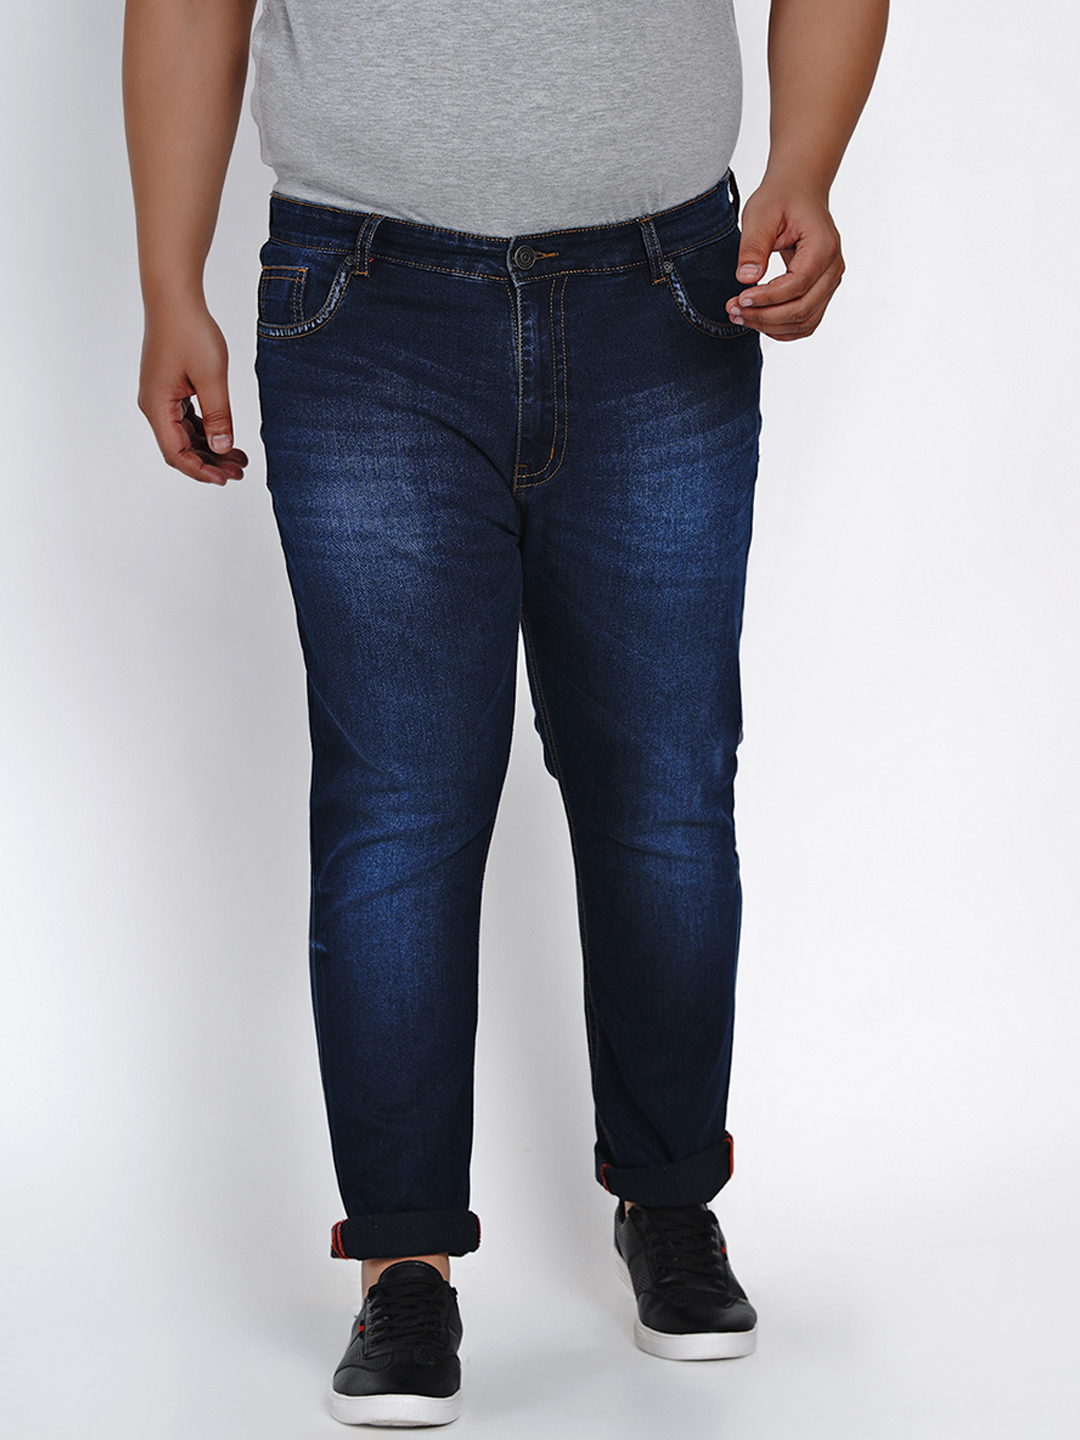 bottomwear/jeans/JPJ2517/jpj2517-1.jpg